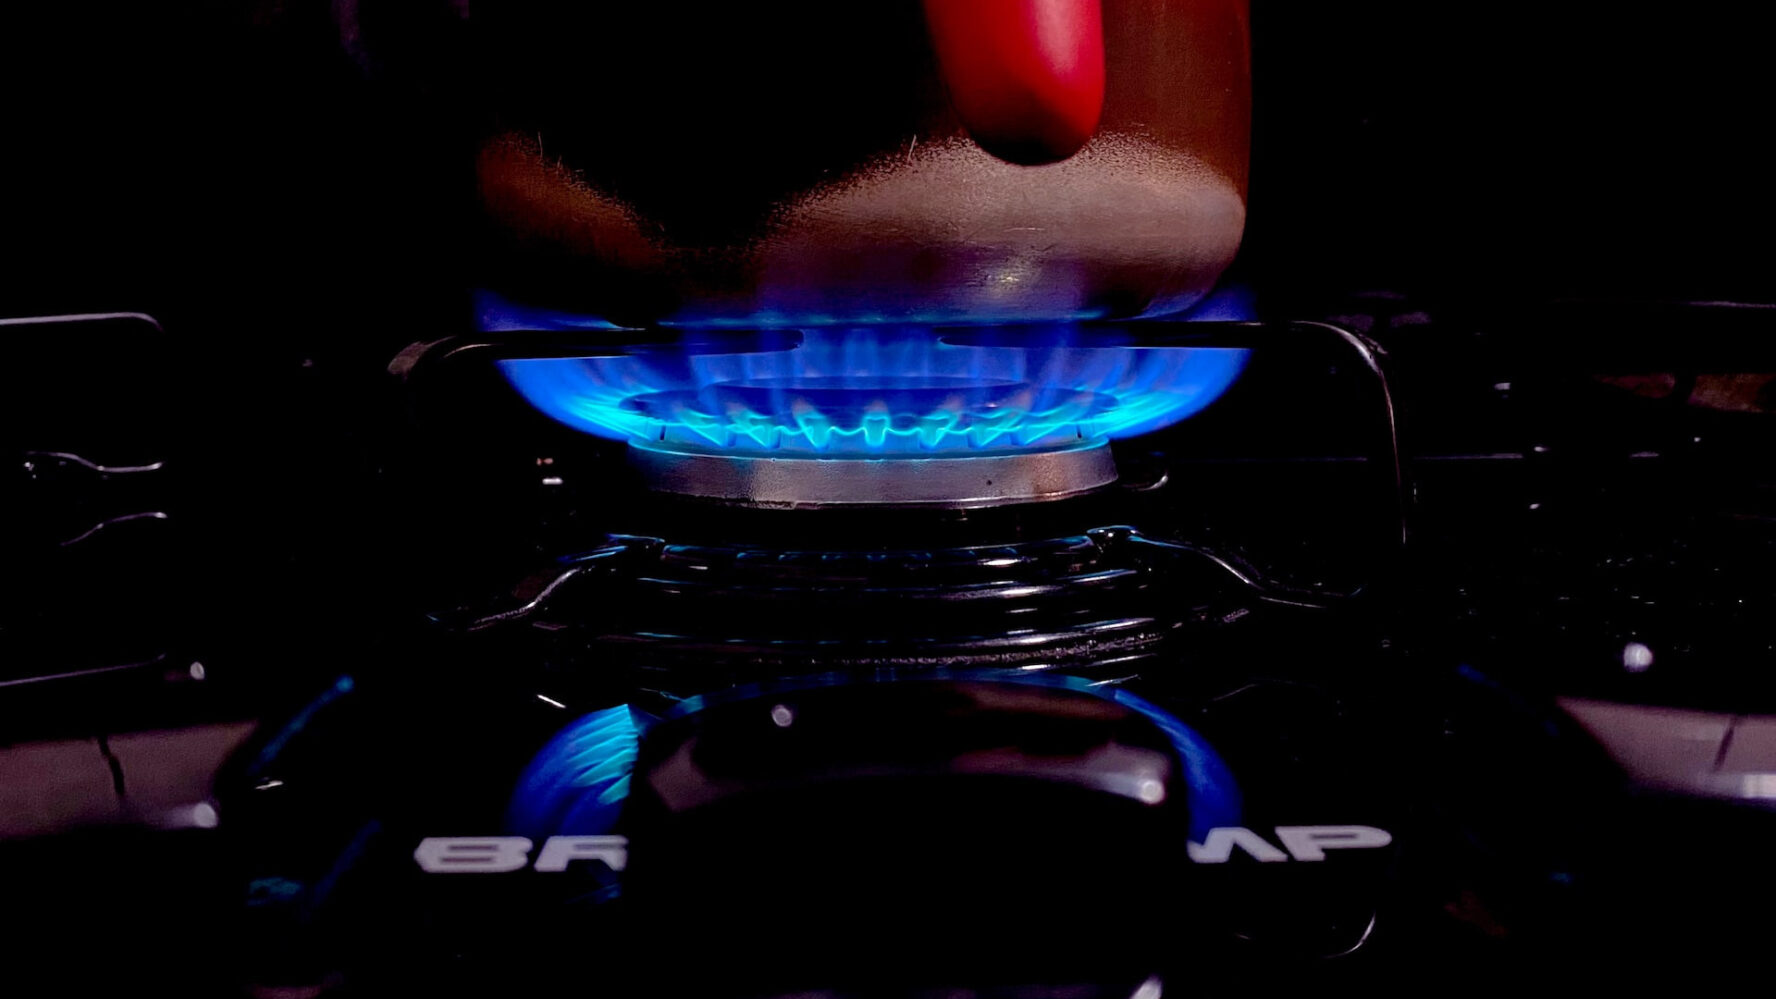 A lit gas burner hob.